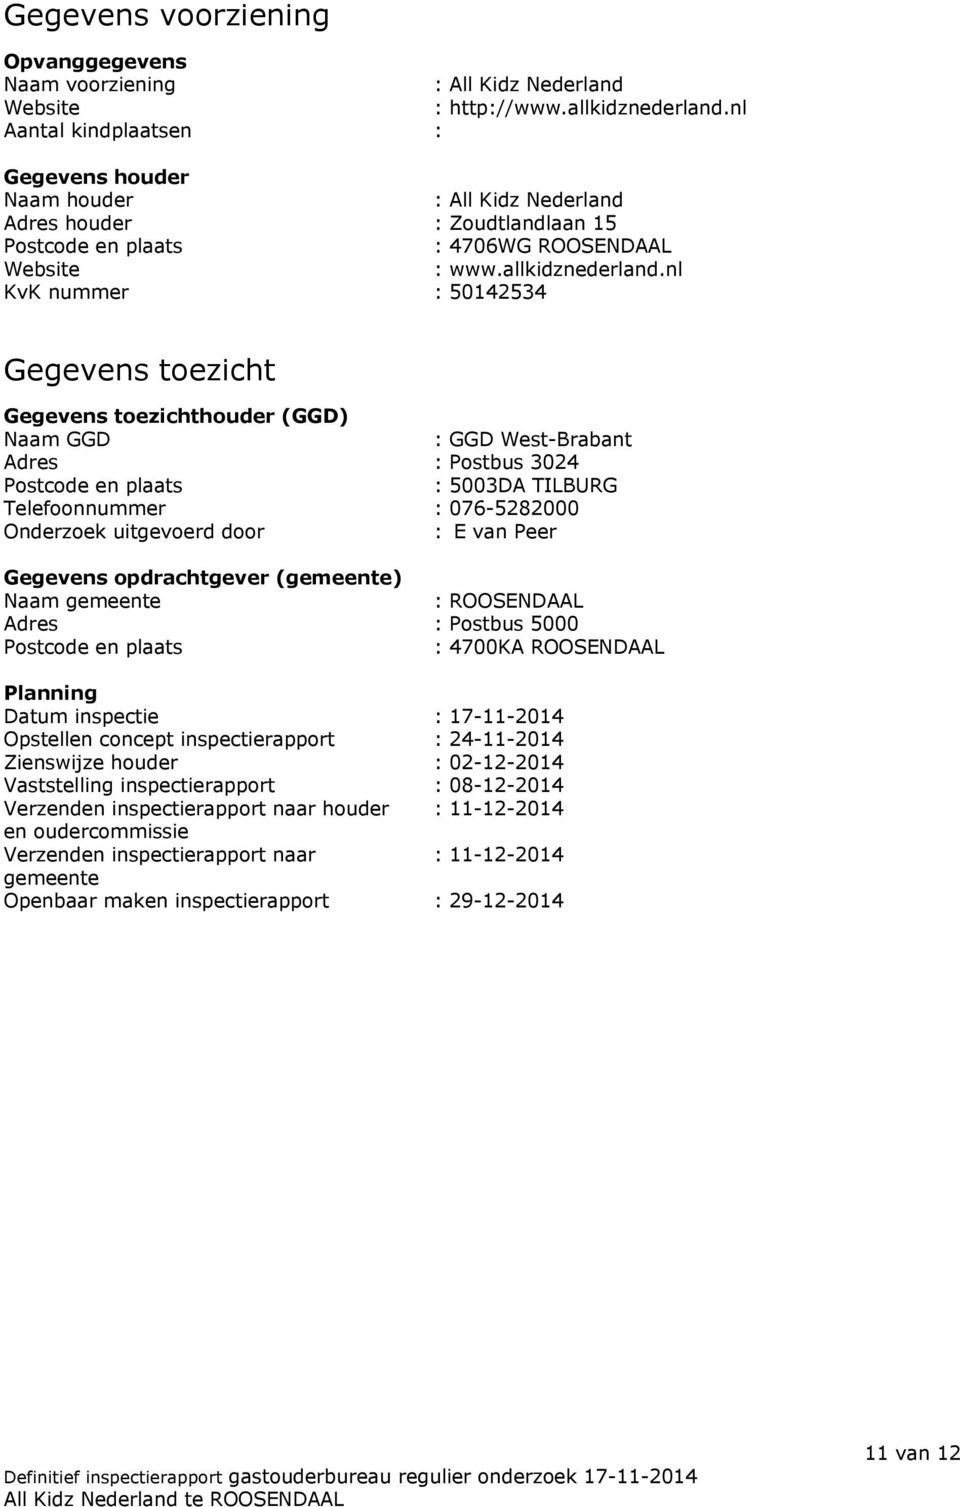 nl KvK nummer : 50142534 Gegevens toezicht Gegevens toezichthouder (GGD) Naam GGD : GGD West-Brabant Adres : Postbus 3024 Postcode en plaats : 5003DA TILBURG Telefoonnummer : 076-5282000 Onderzoek